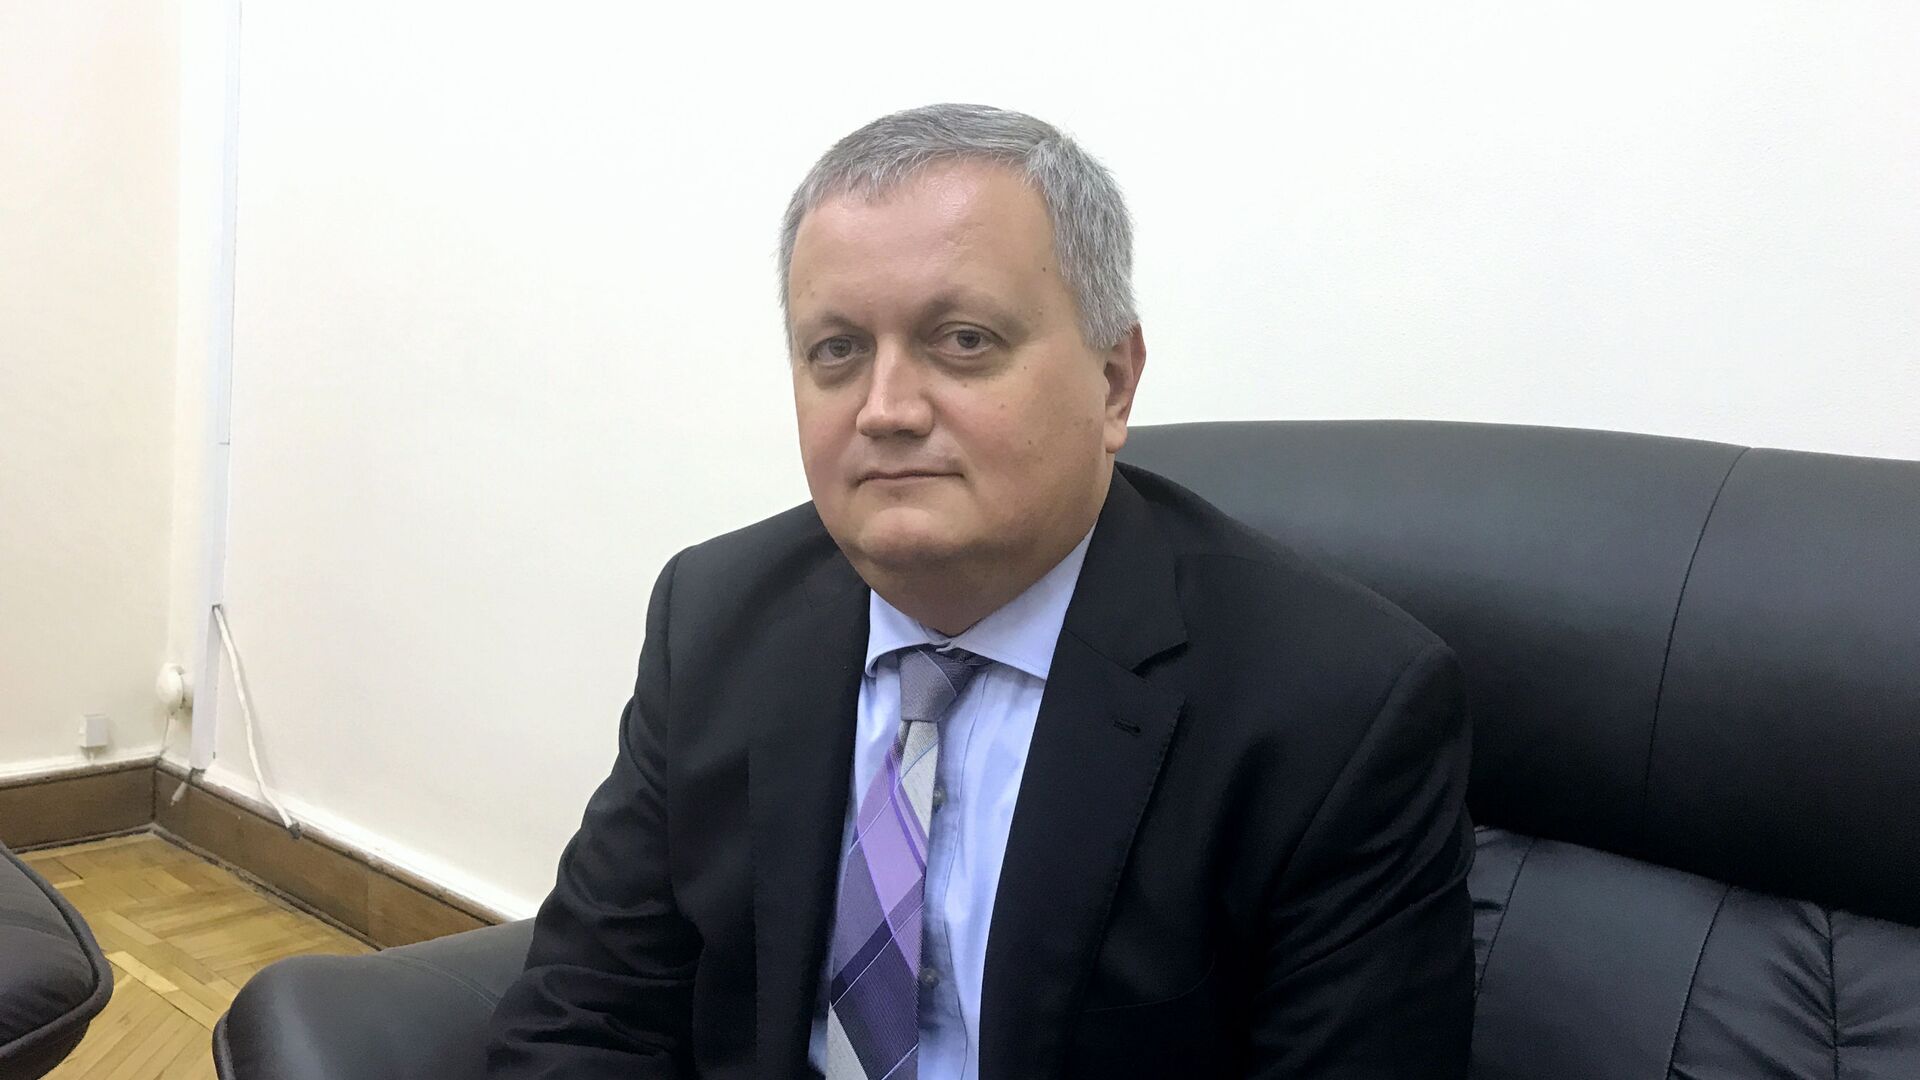 سفير روسيا في مصر يهنئ المقيمين والأصدقاء بعيد النصر ويحذر من التحديات الراهنة